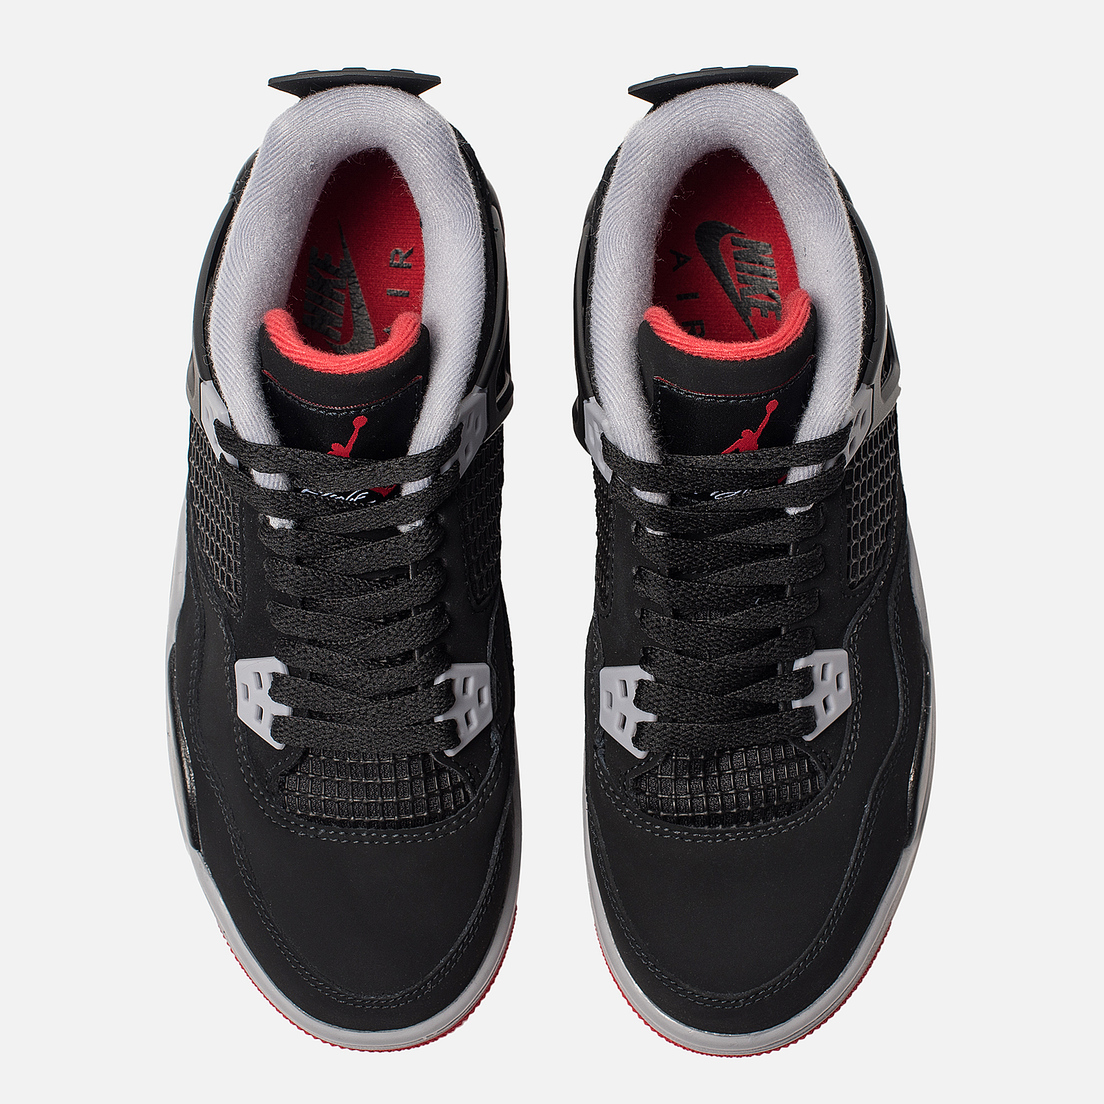 Jordan Подростковые кроссовки Air Jordan 4 Retro GS